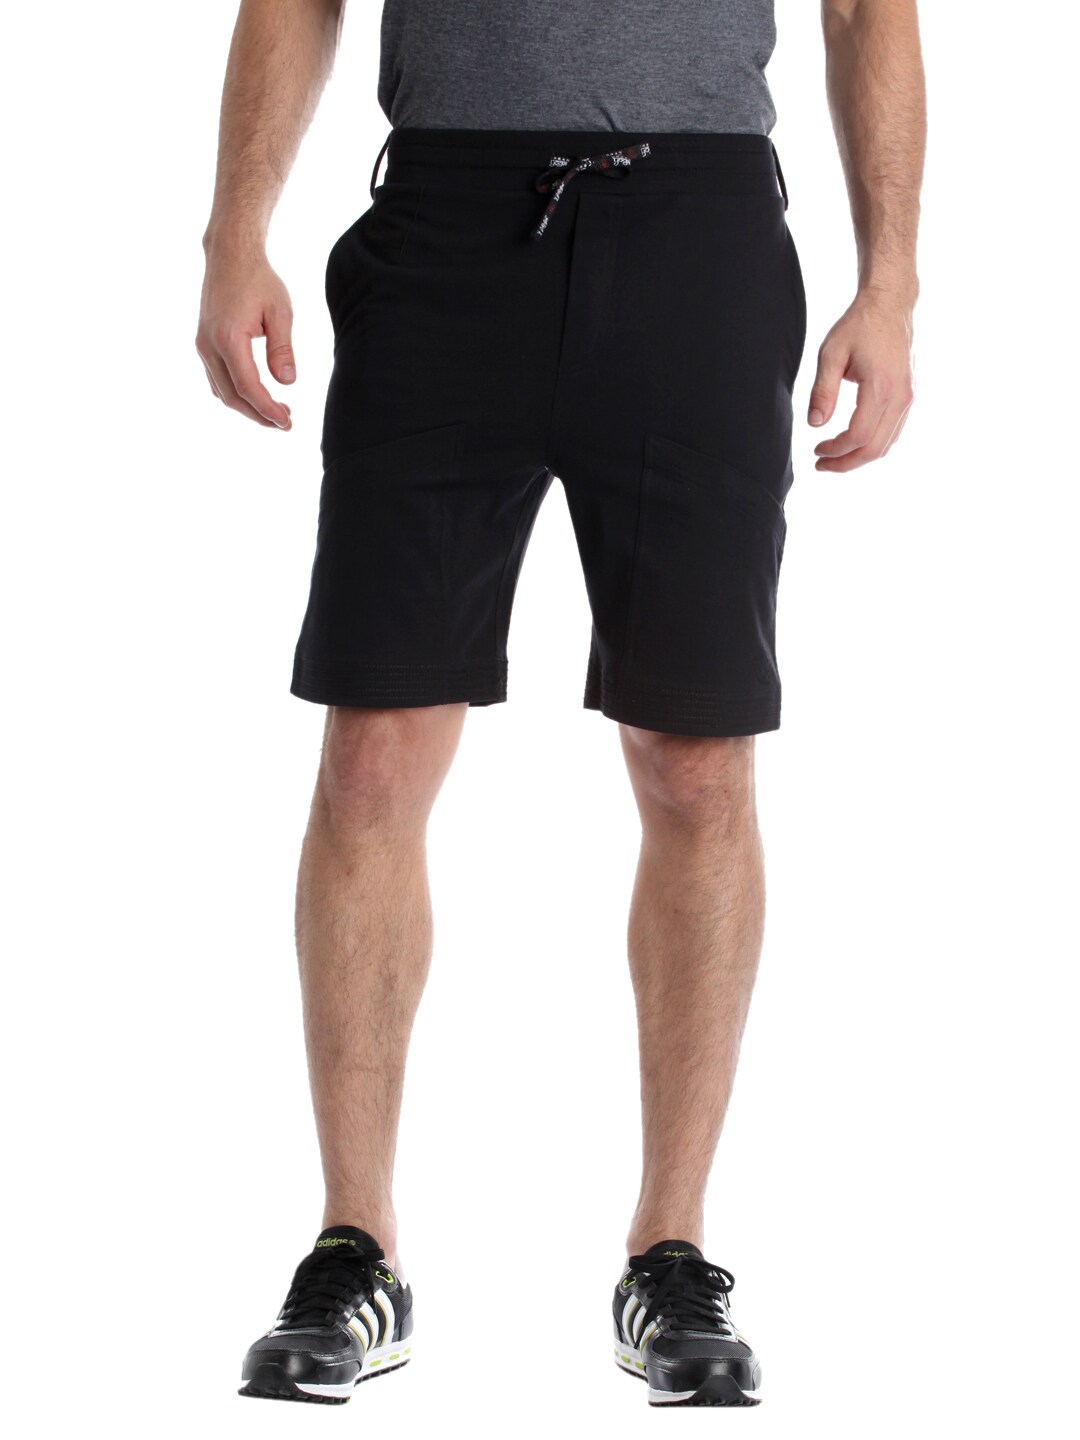 Urban Yoga Men Black Shorts